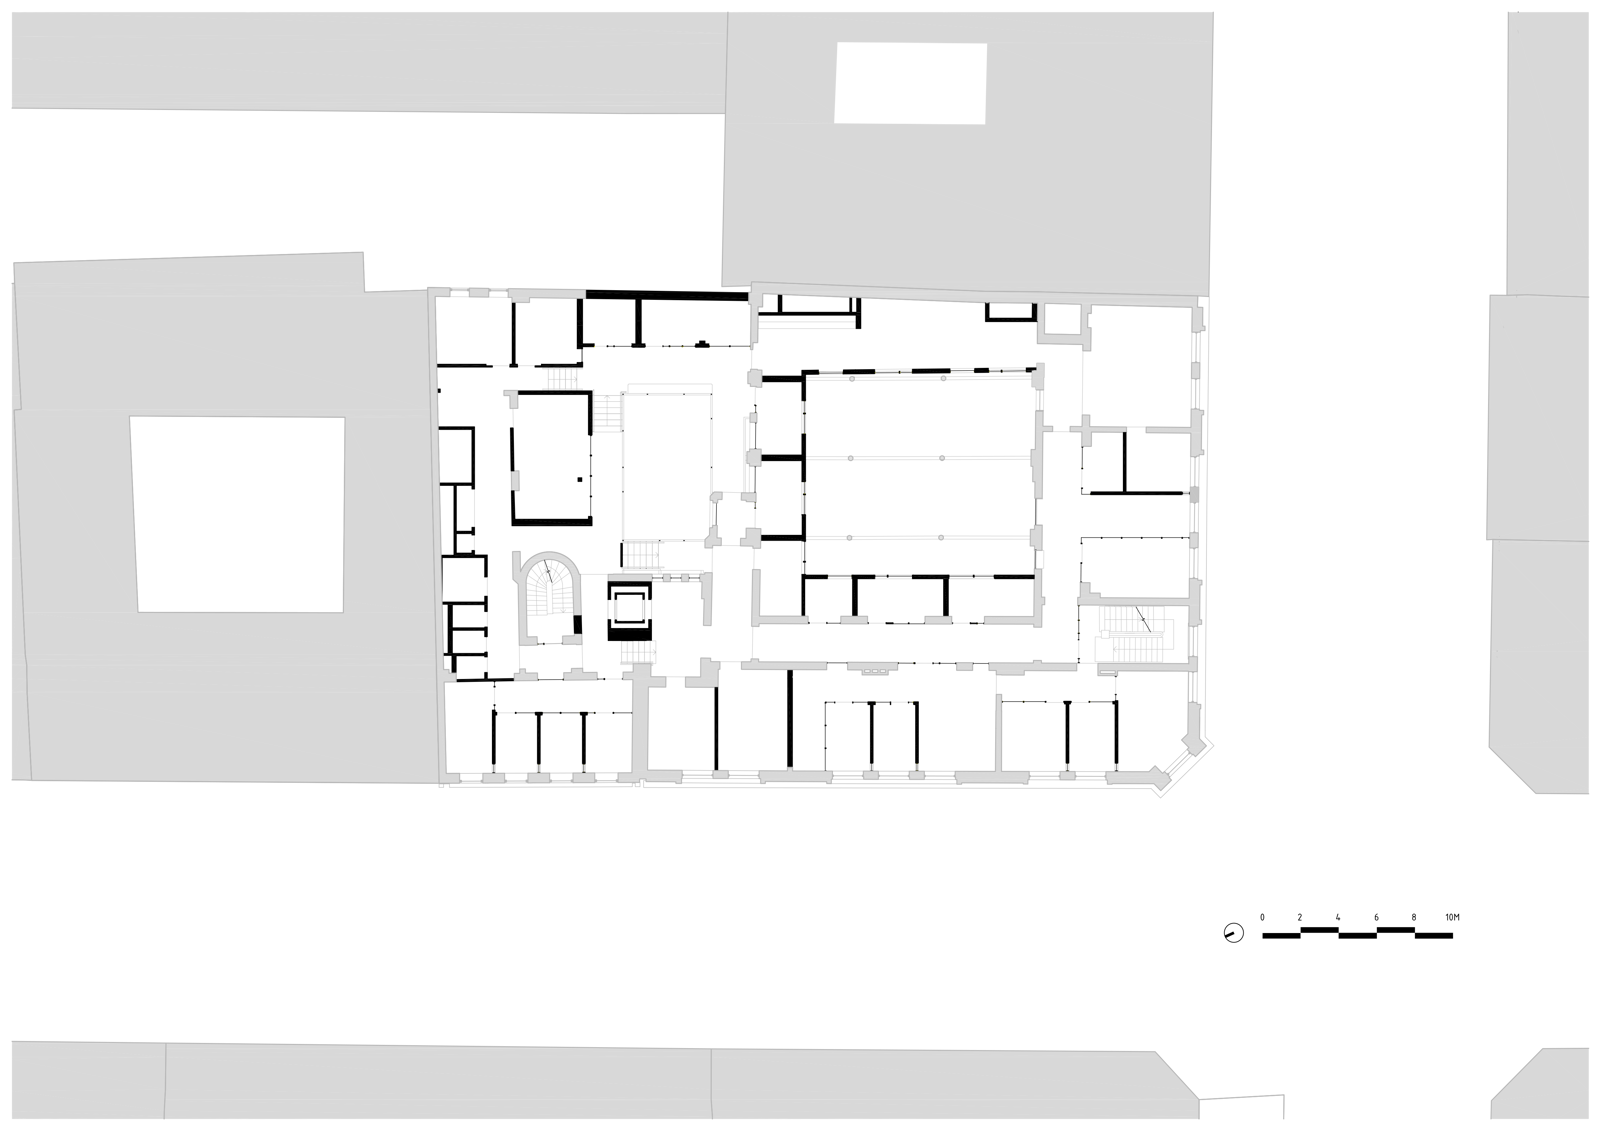 Andre etasje plan av pressens hus. Teknisk tegning. 